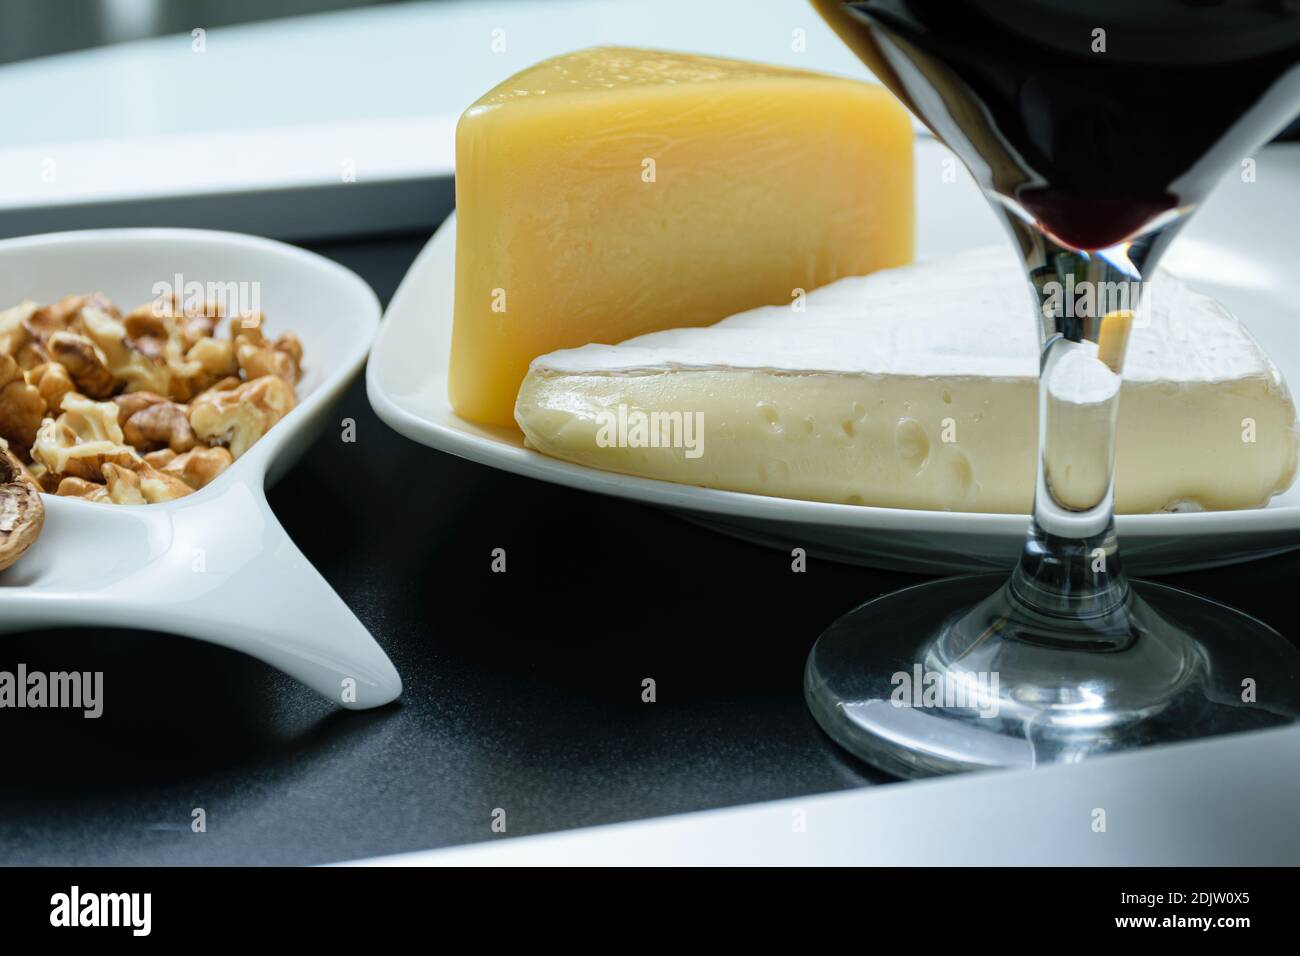 Gros plan sur les fromages brie et parmesan à côté d'une portion de noix et d'un verre de vin rouge. Banque D'Images